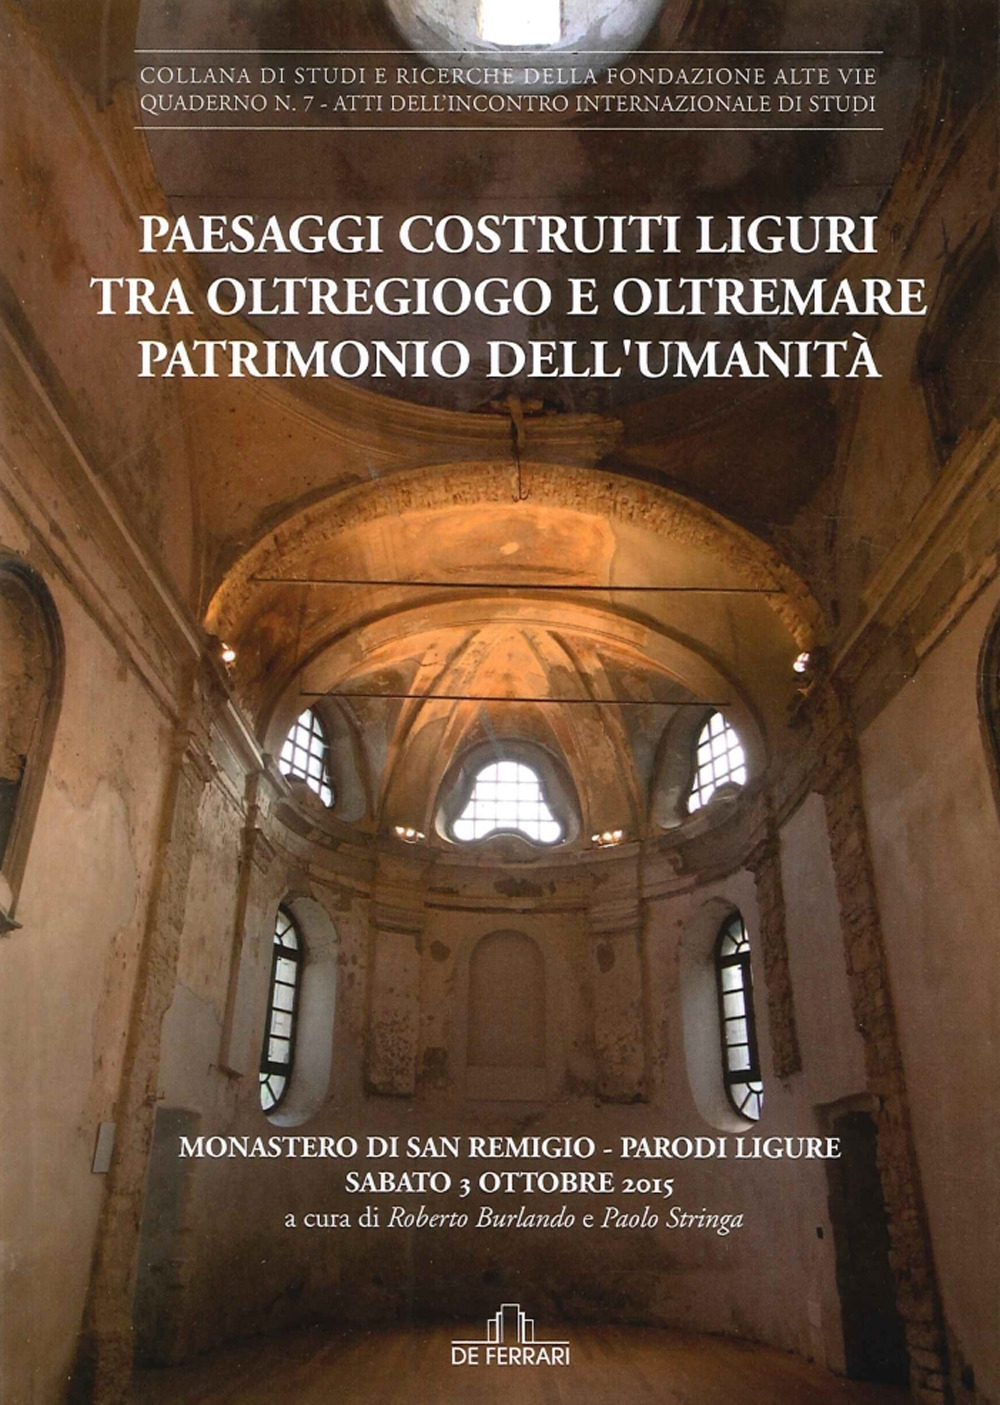 Paesaggi costruiti. Liguri tra Oltregiogo e Oltremare patrimonio dell'umanità. Monastero di San Remigio (Parodi liguri, 3 ottobre 2015)